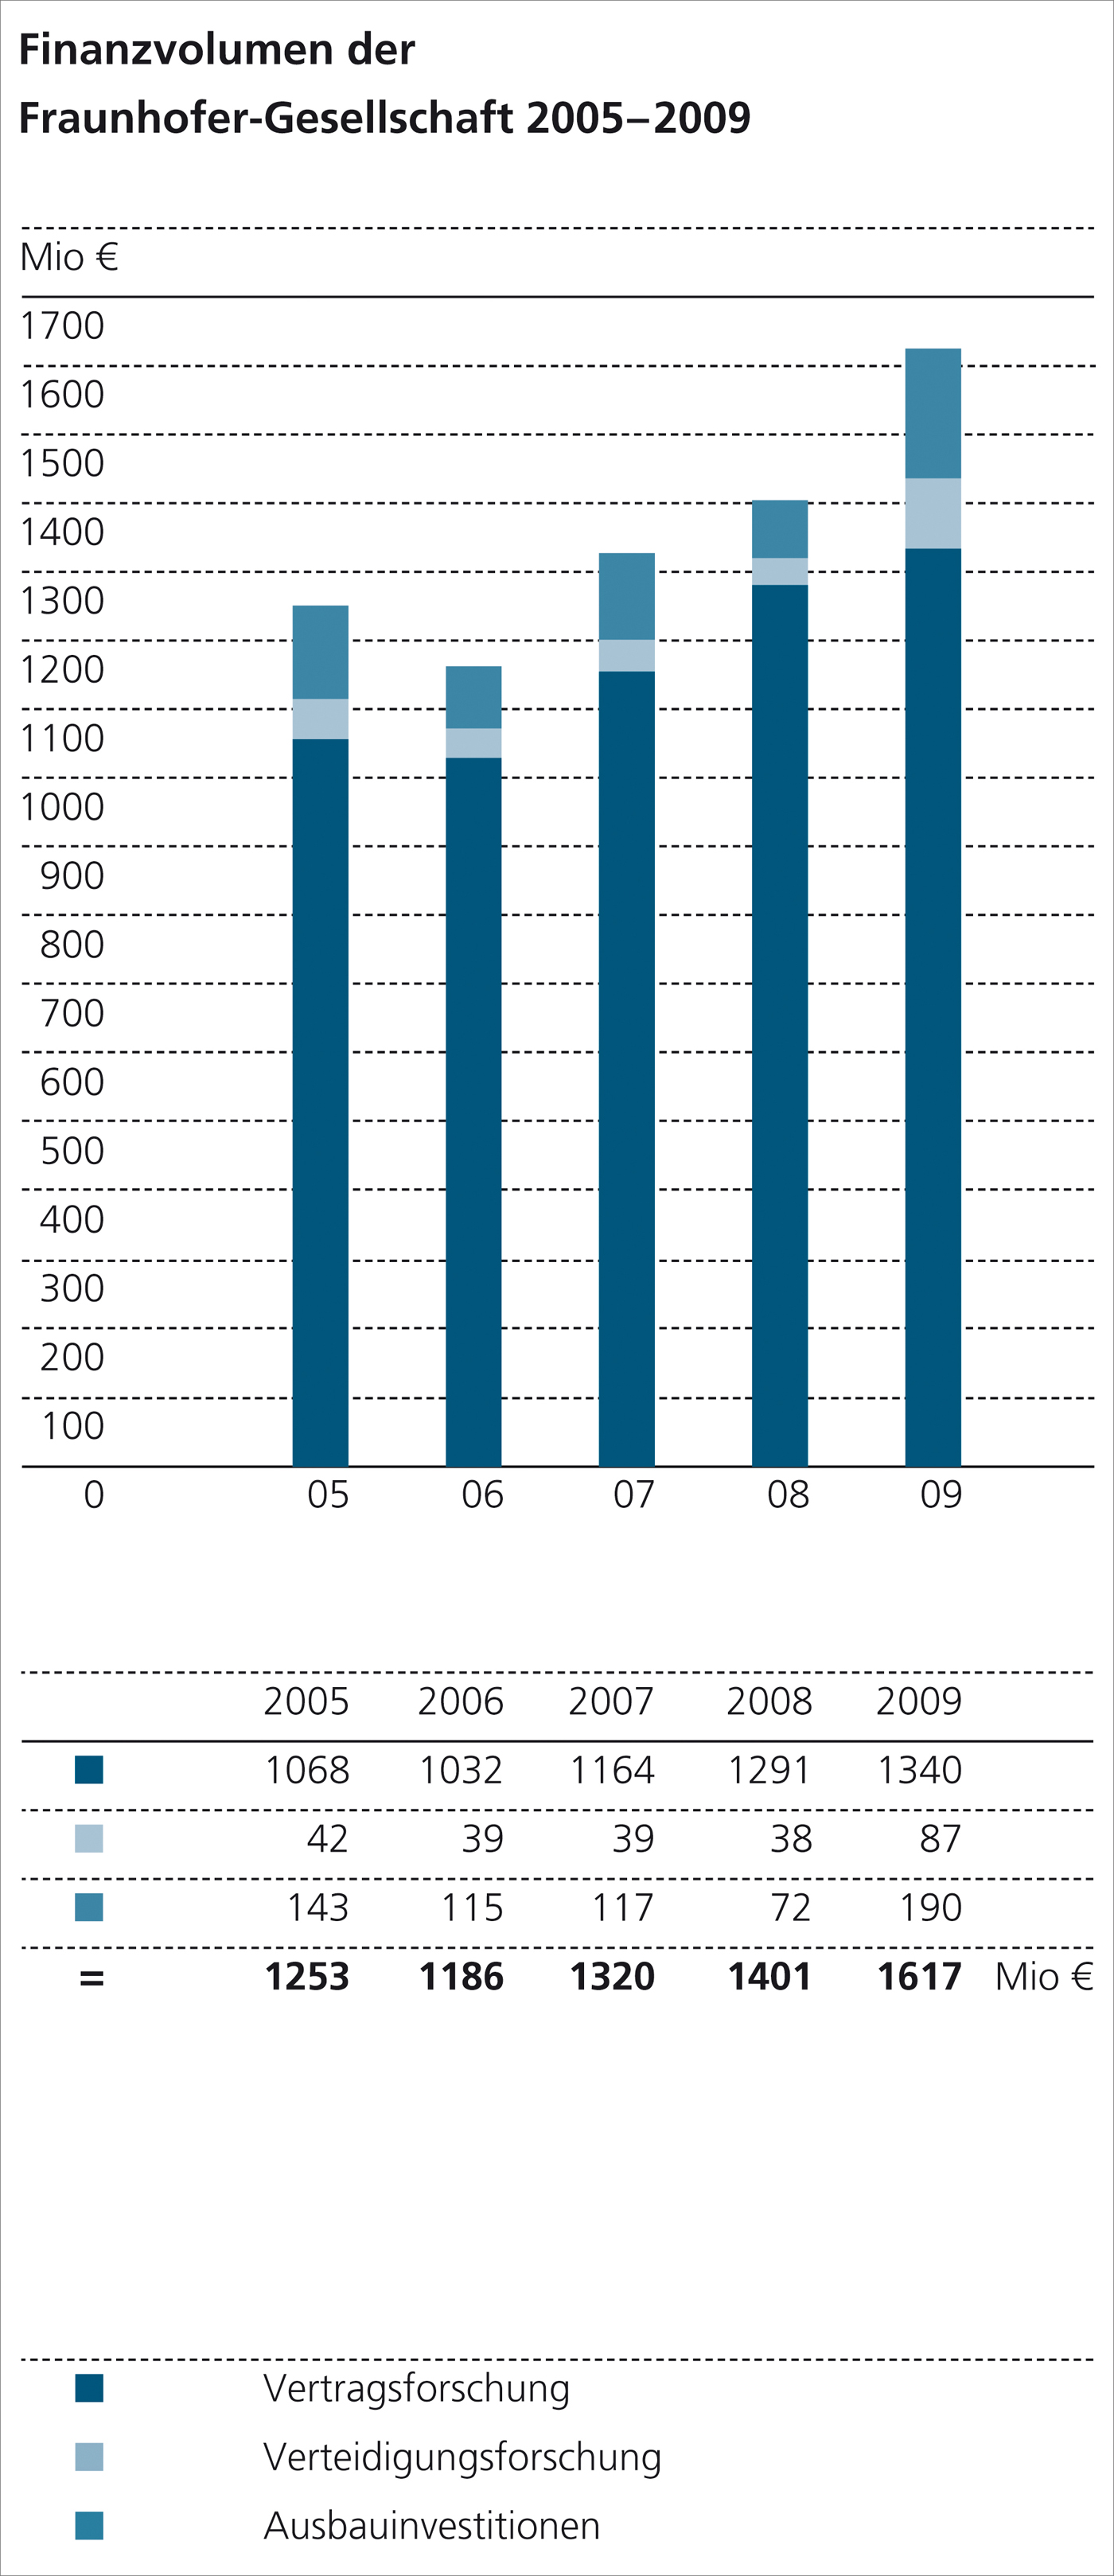 Bild: Finanzvolumen der Fraunhofer-Gesellschaft 2005-2009